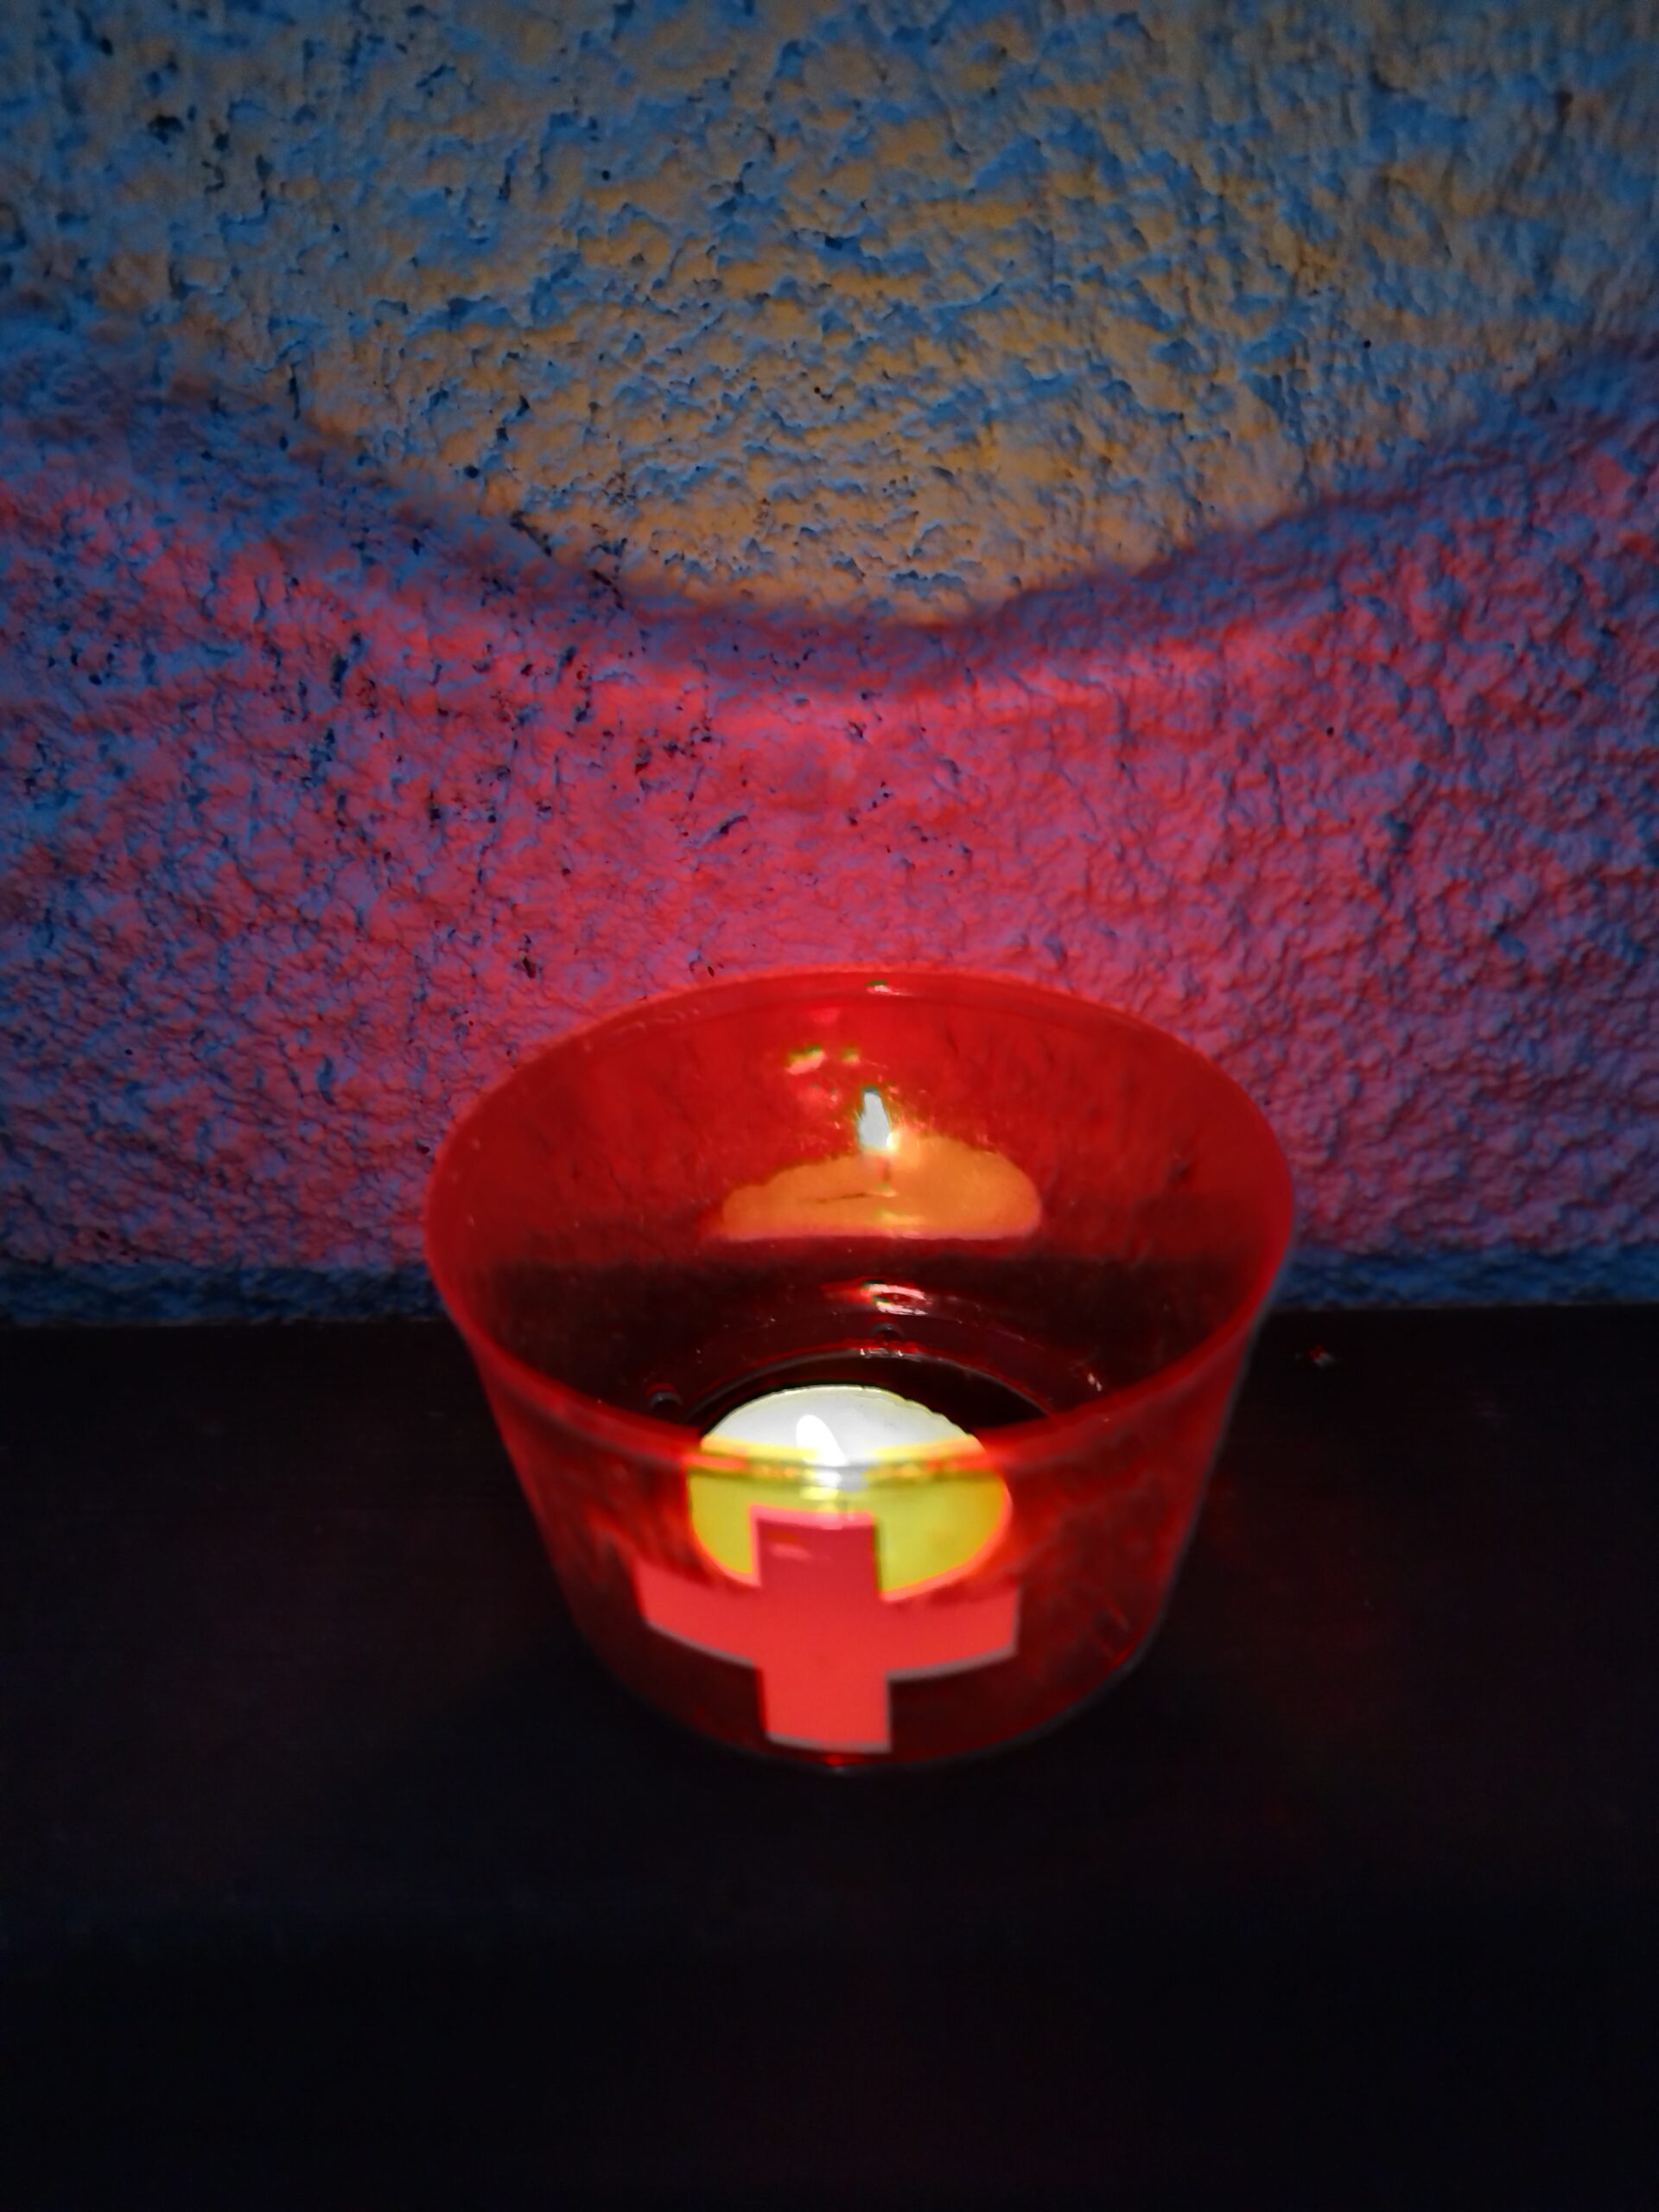 Nationalfeiertag 1. Agustfeier im honora zen kloster in der schweiz